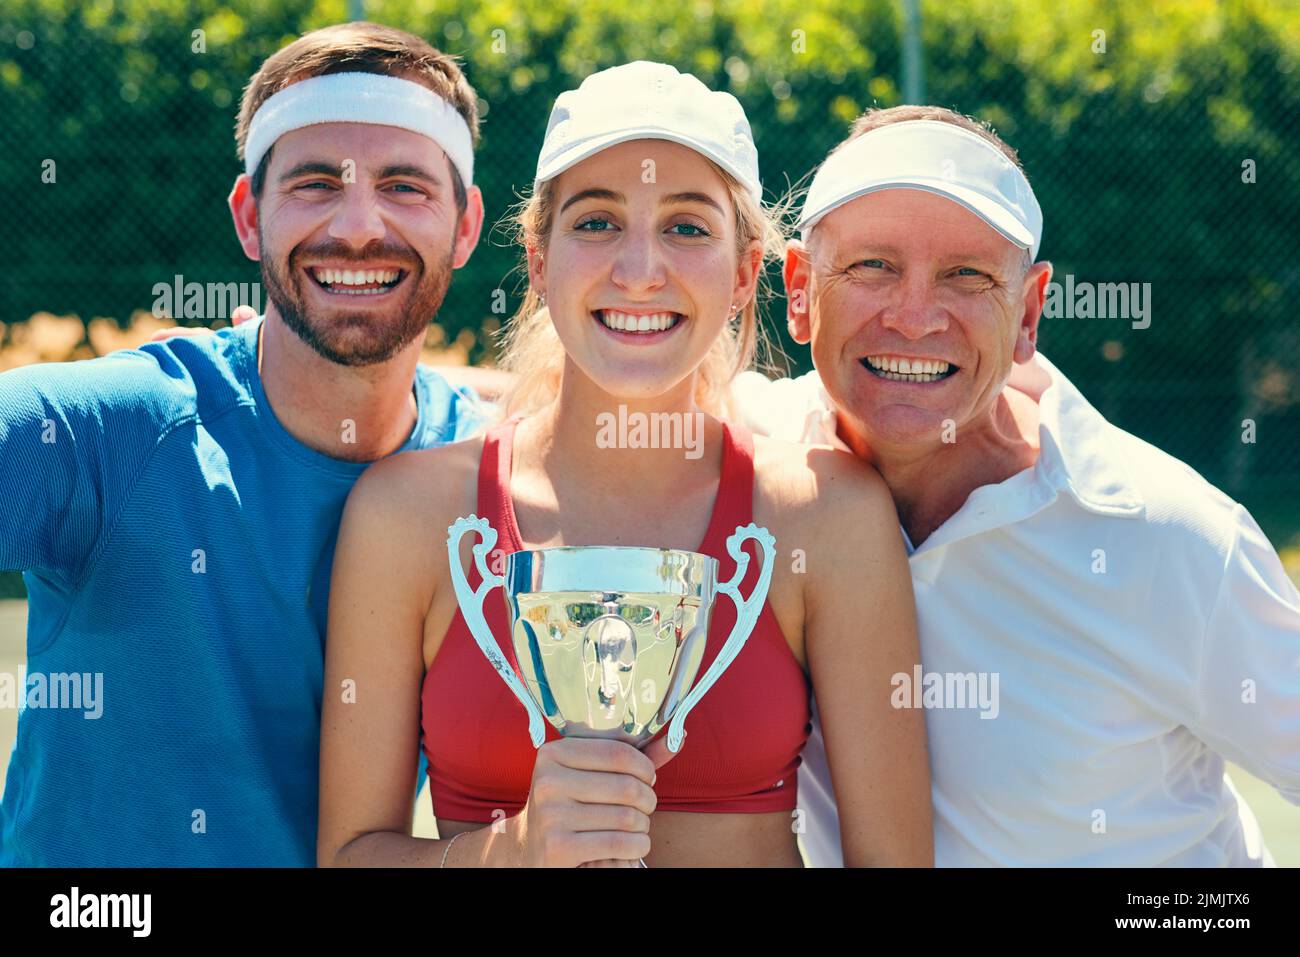 Image de la victoire est nécessaire. Portrait court d'un groupe de sportifs debout ensemble et tenant un trophée après avoir remporté un match de tennis. Banque D'Images